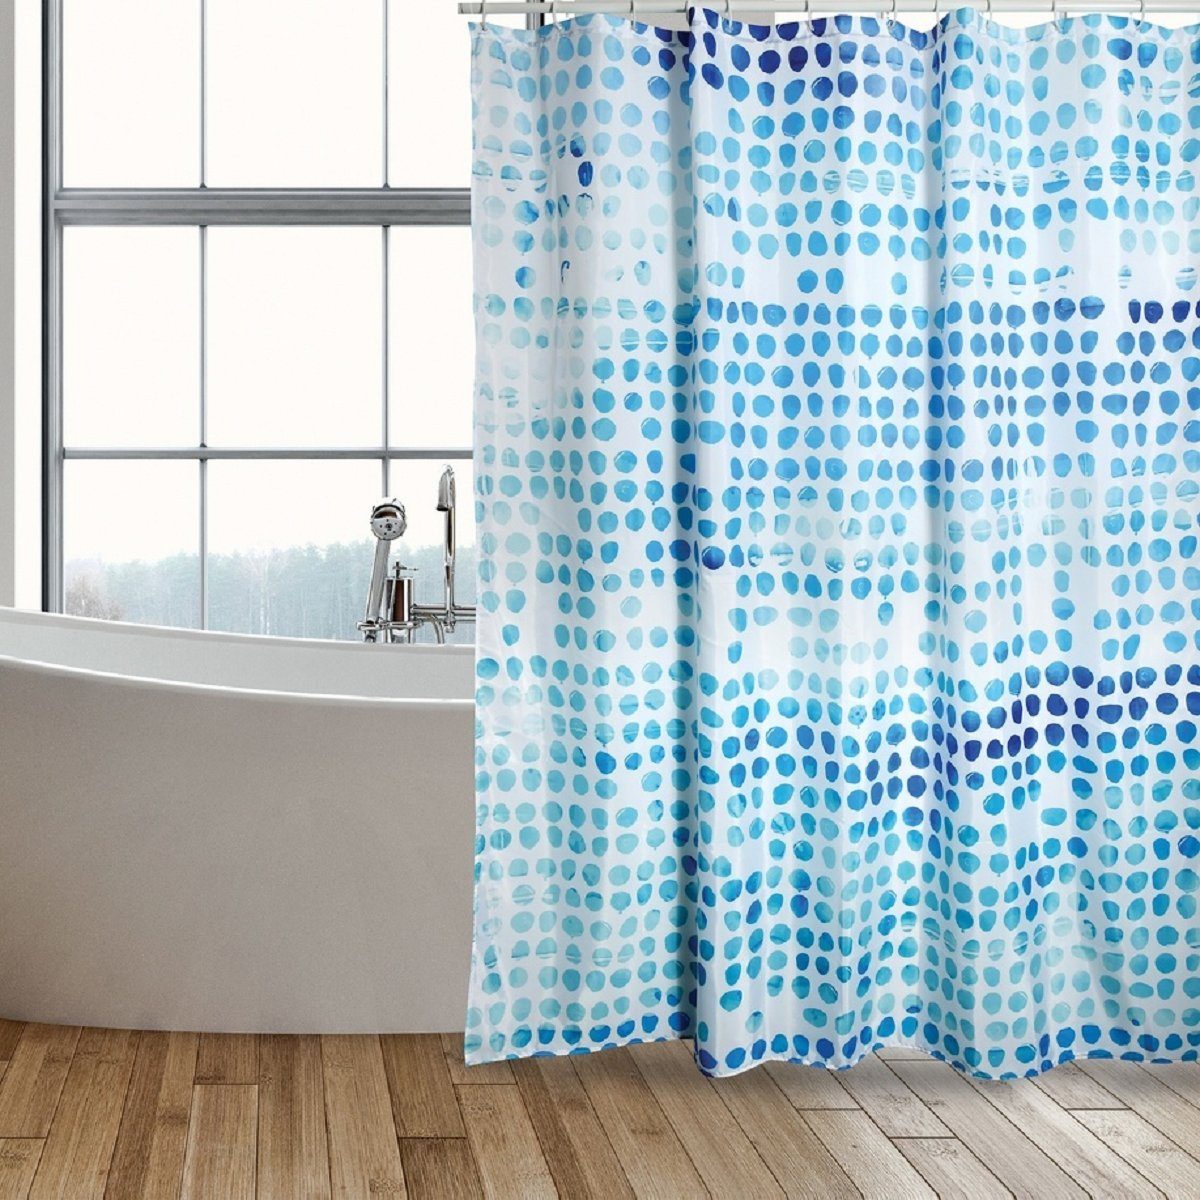 MSV Duschvorhang WATERCOLOR Breite 180 cm, Textil-Duschvorhang, 100% Polyester, wasserabweisend, Anti-Schimmel-Effekt, waschbar 30°, Farbe weiß / blau, 180 x 200 cm